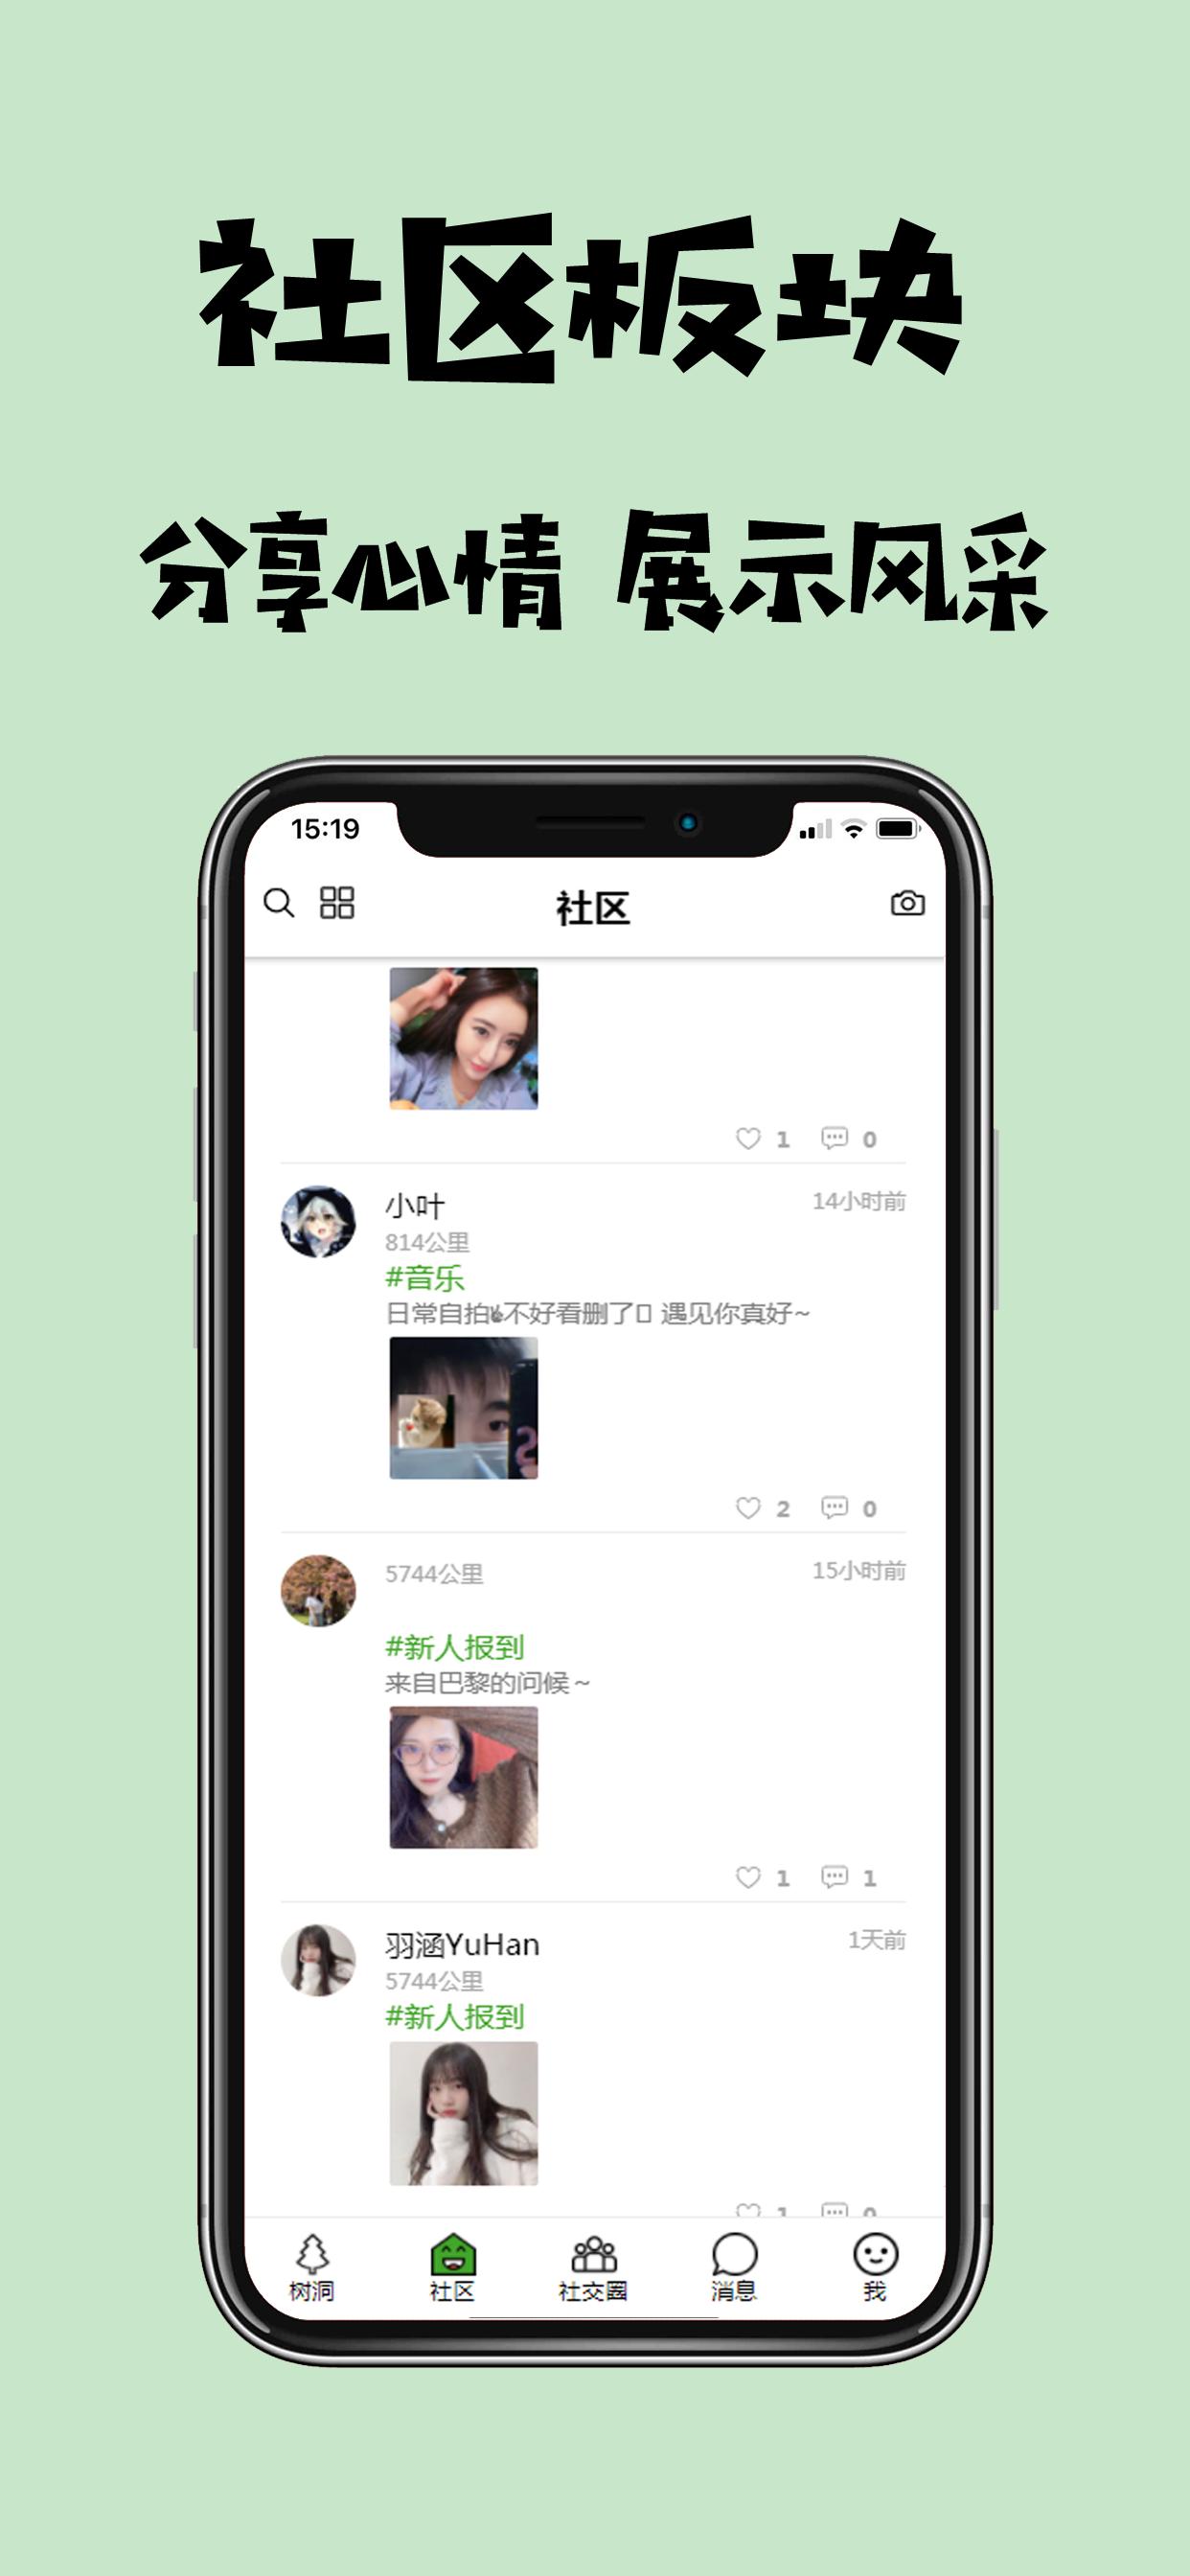 树洞 海外华人留学生的树洞社交APP 1.0.4 Screenshot 11